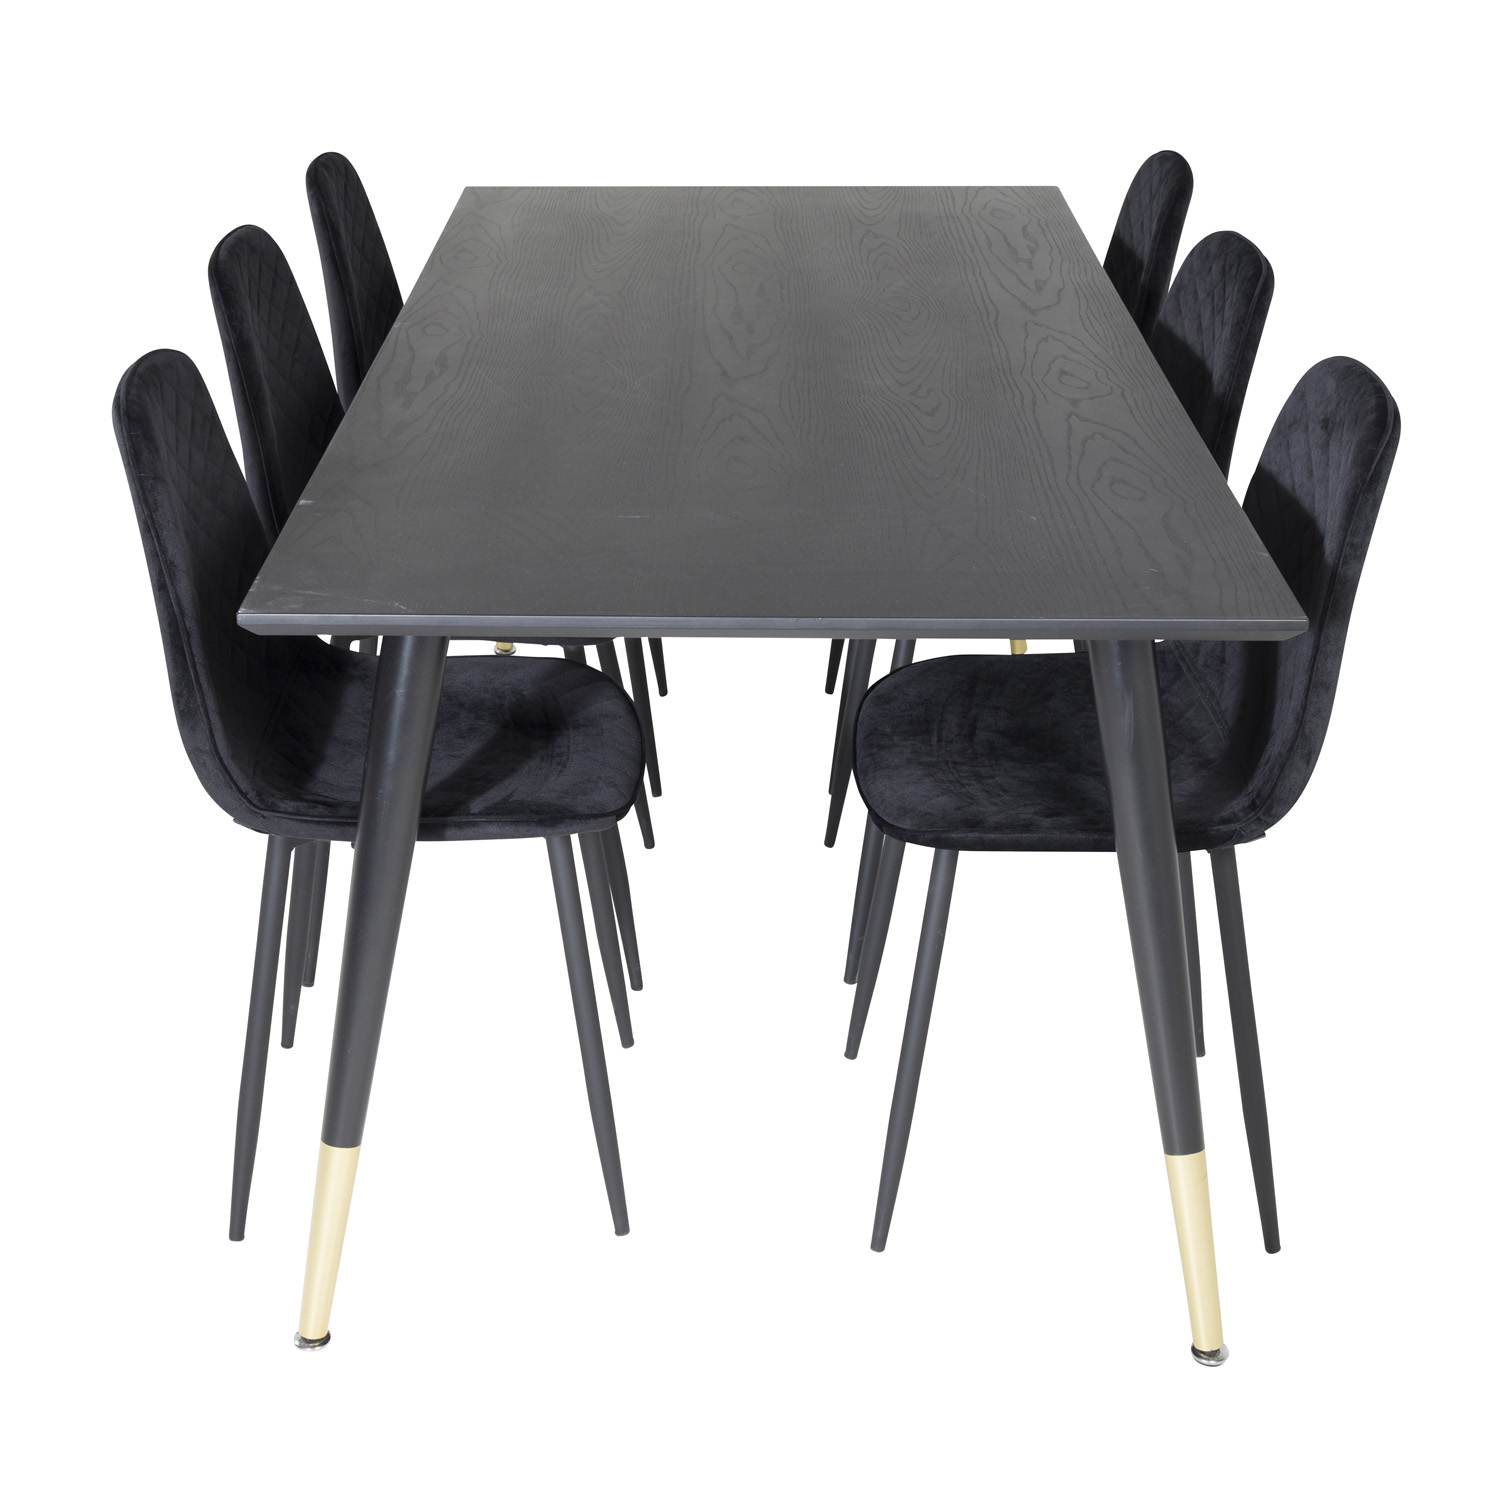 6: VENTURE DESIGN Dipp spisebordssæt, m. 6 stole - sort finer/messing sort metal, sort fløjl/sort metal